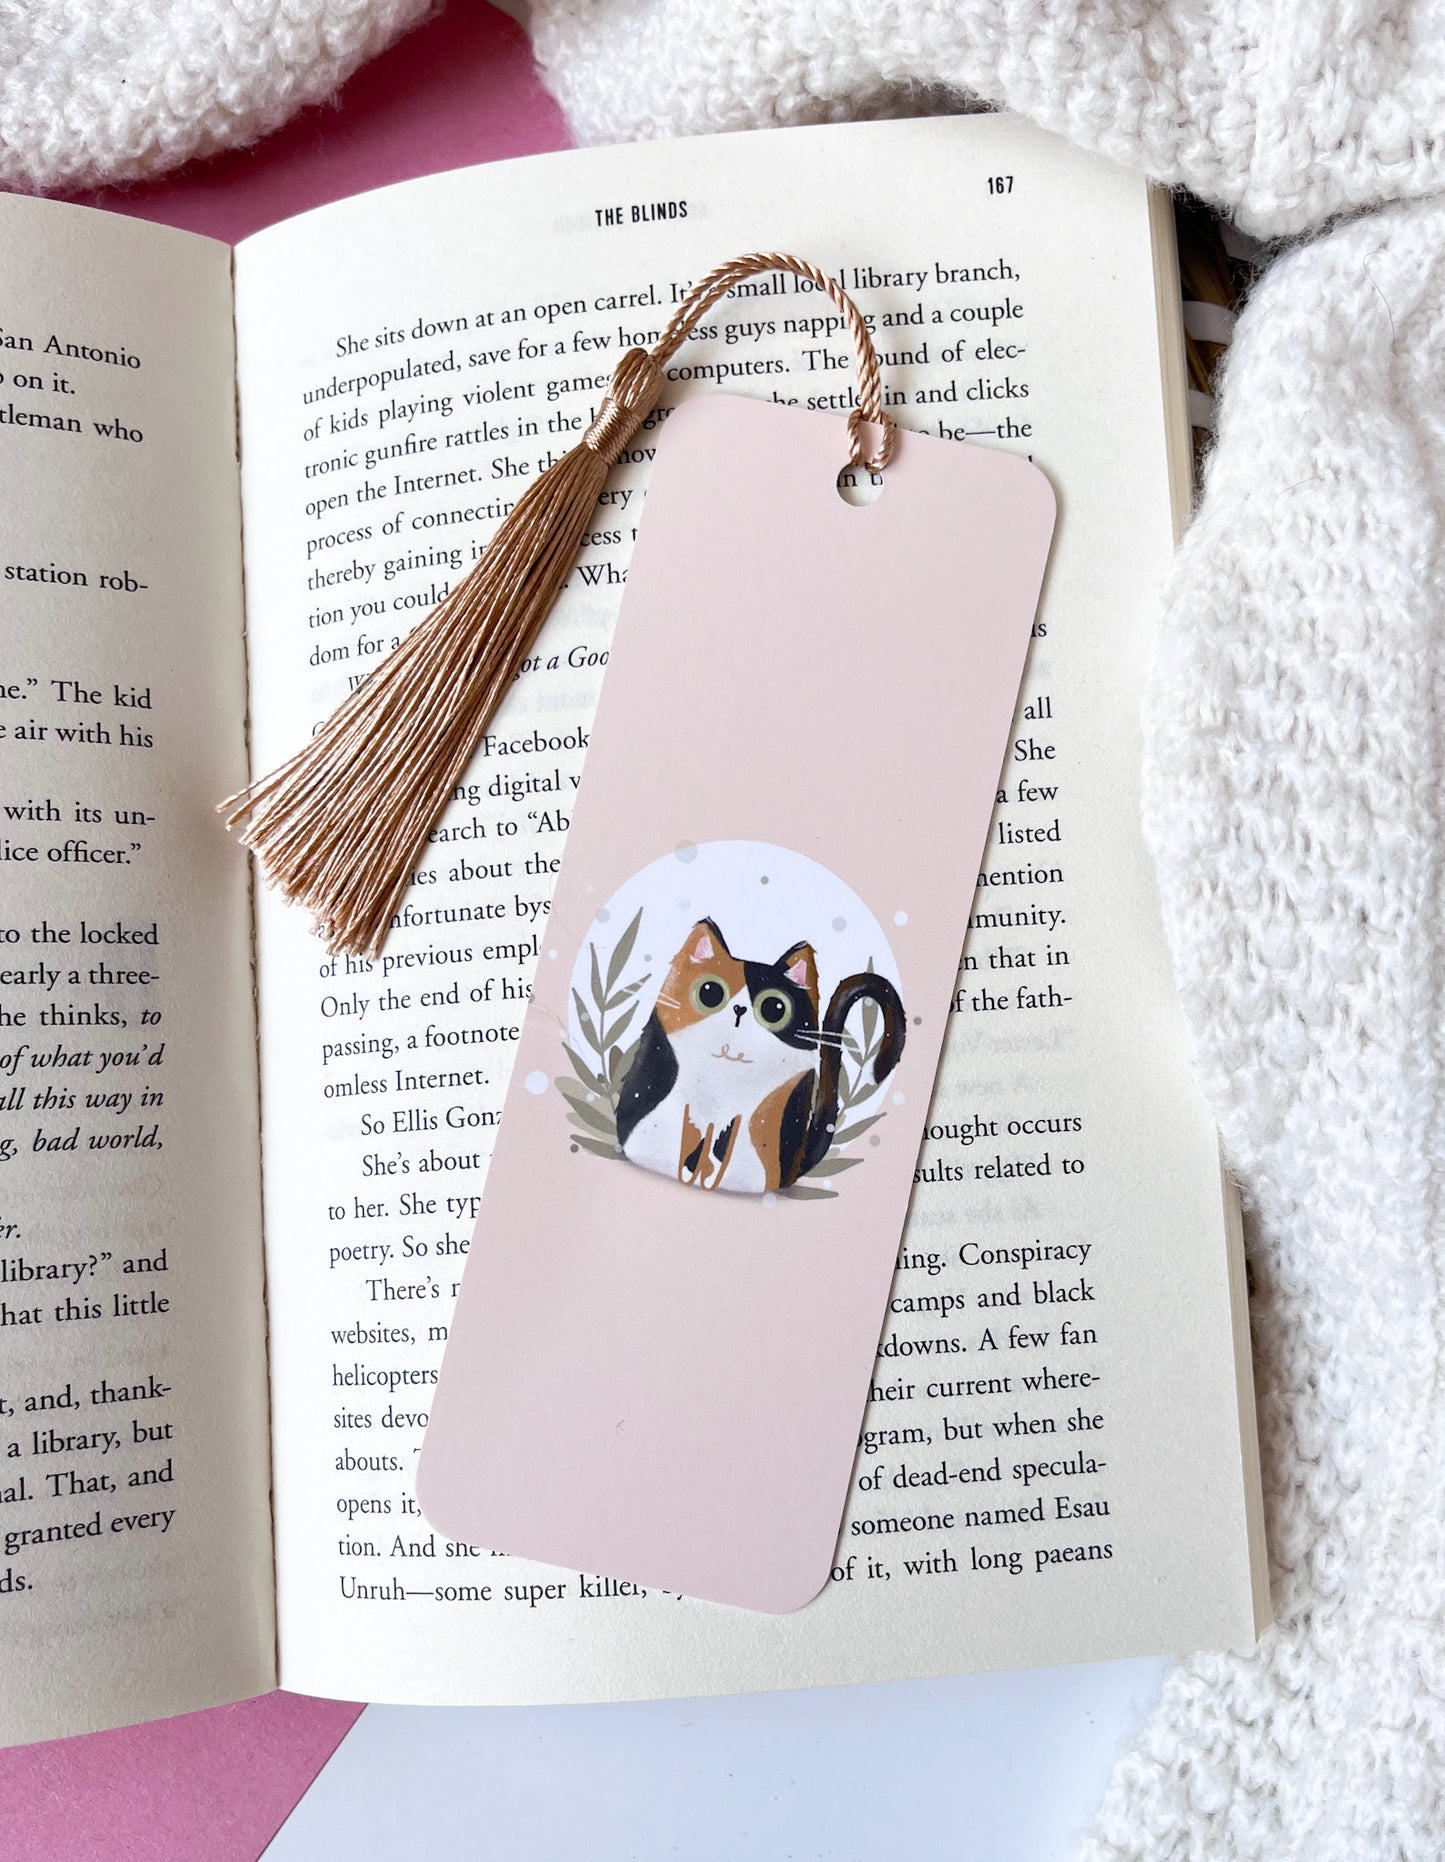 Calico/Torti Cat Bookmark